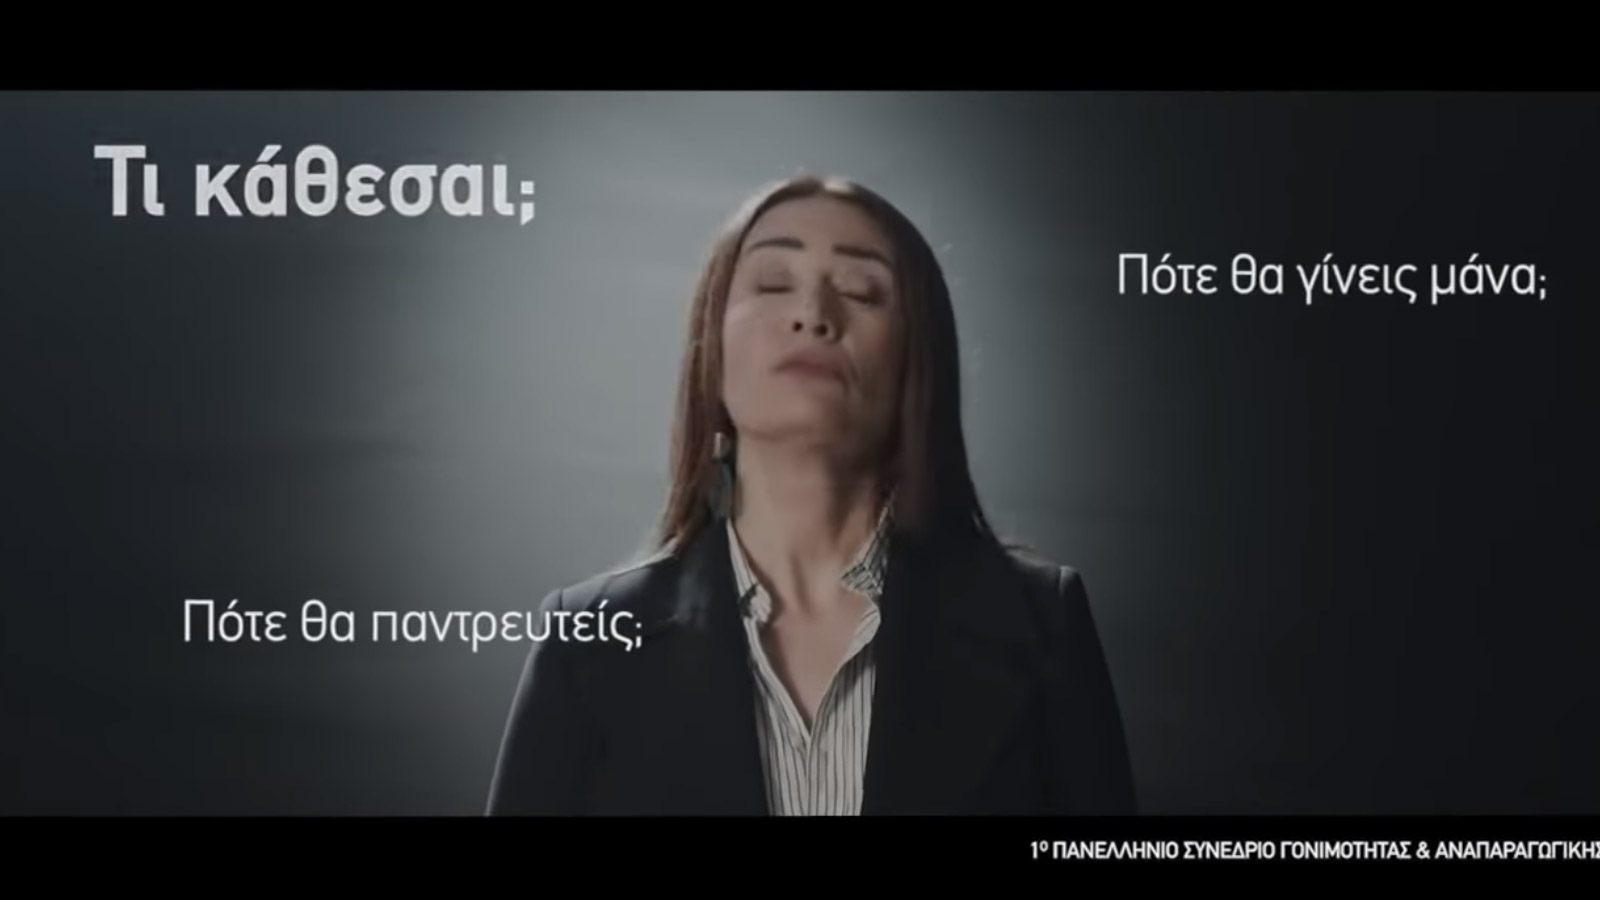 Στιγμιότυπο από το βίντεο που διαφήμιζε το «1ο πανελλαδικό συνέδριο γονιμότητας και αναπαραγωγικής αυτονομίας» και προκάλεσε θύελλα αντιδράσεων για τις σκοταδιστικές απόψεις που αναπαρήγαγε